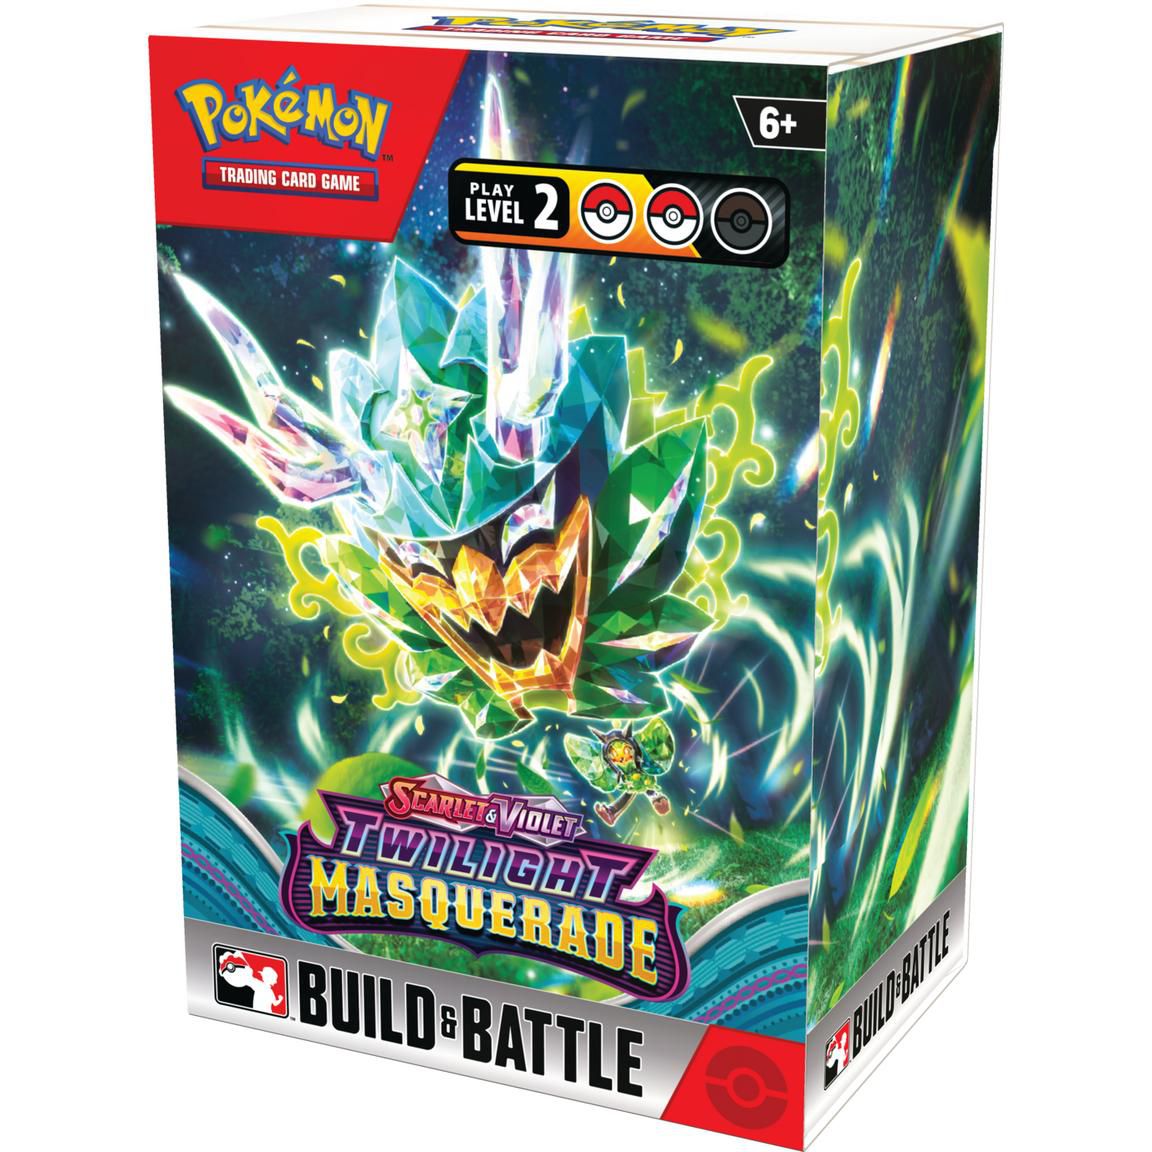 Une boîte du JCC Pokémon Construire et Combattre pour Twilight Masquerade, avec un Ogerpon sur la couverture.